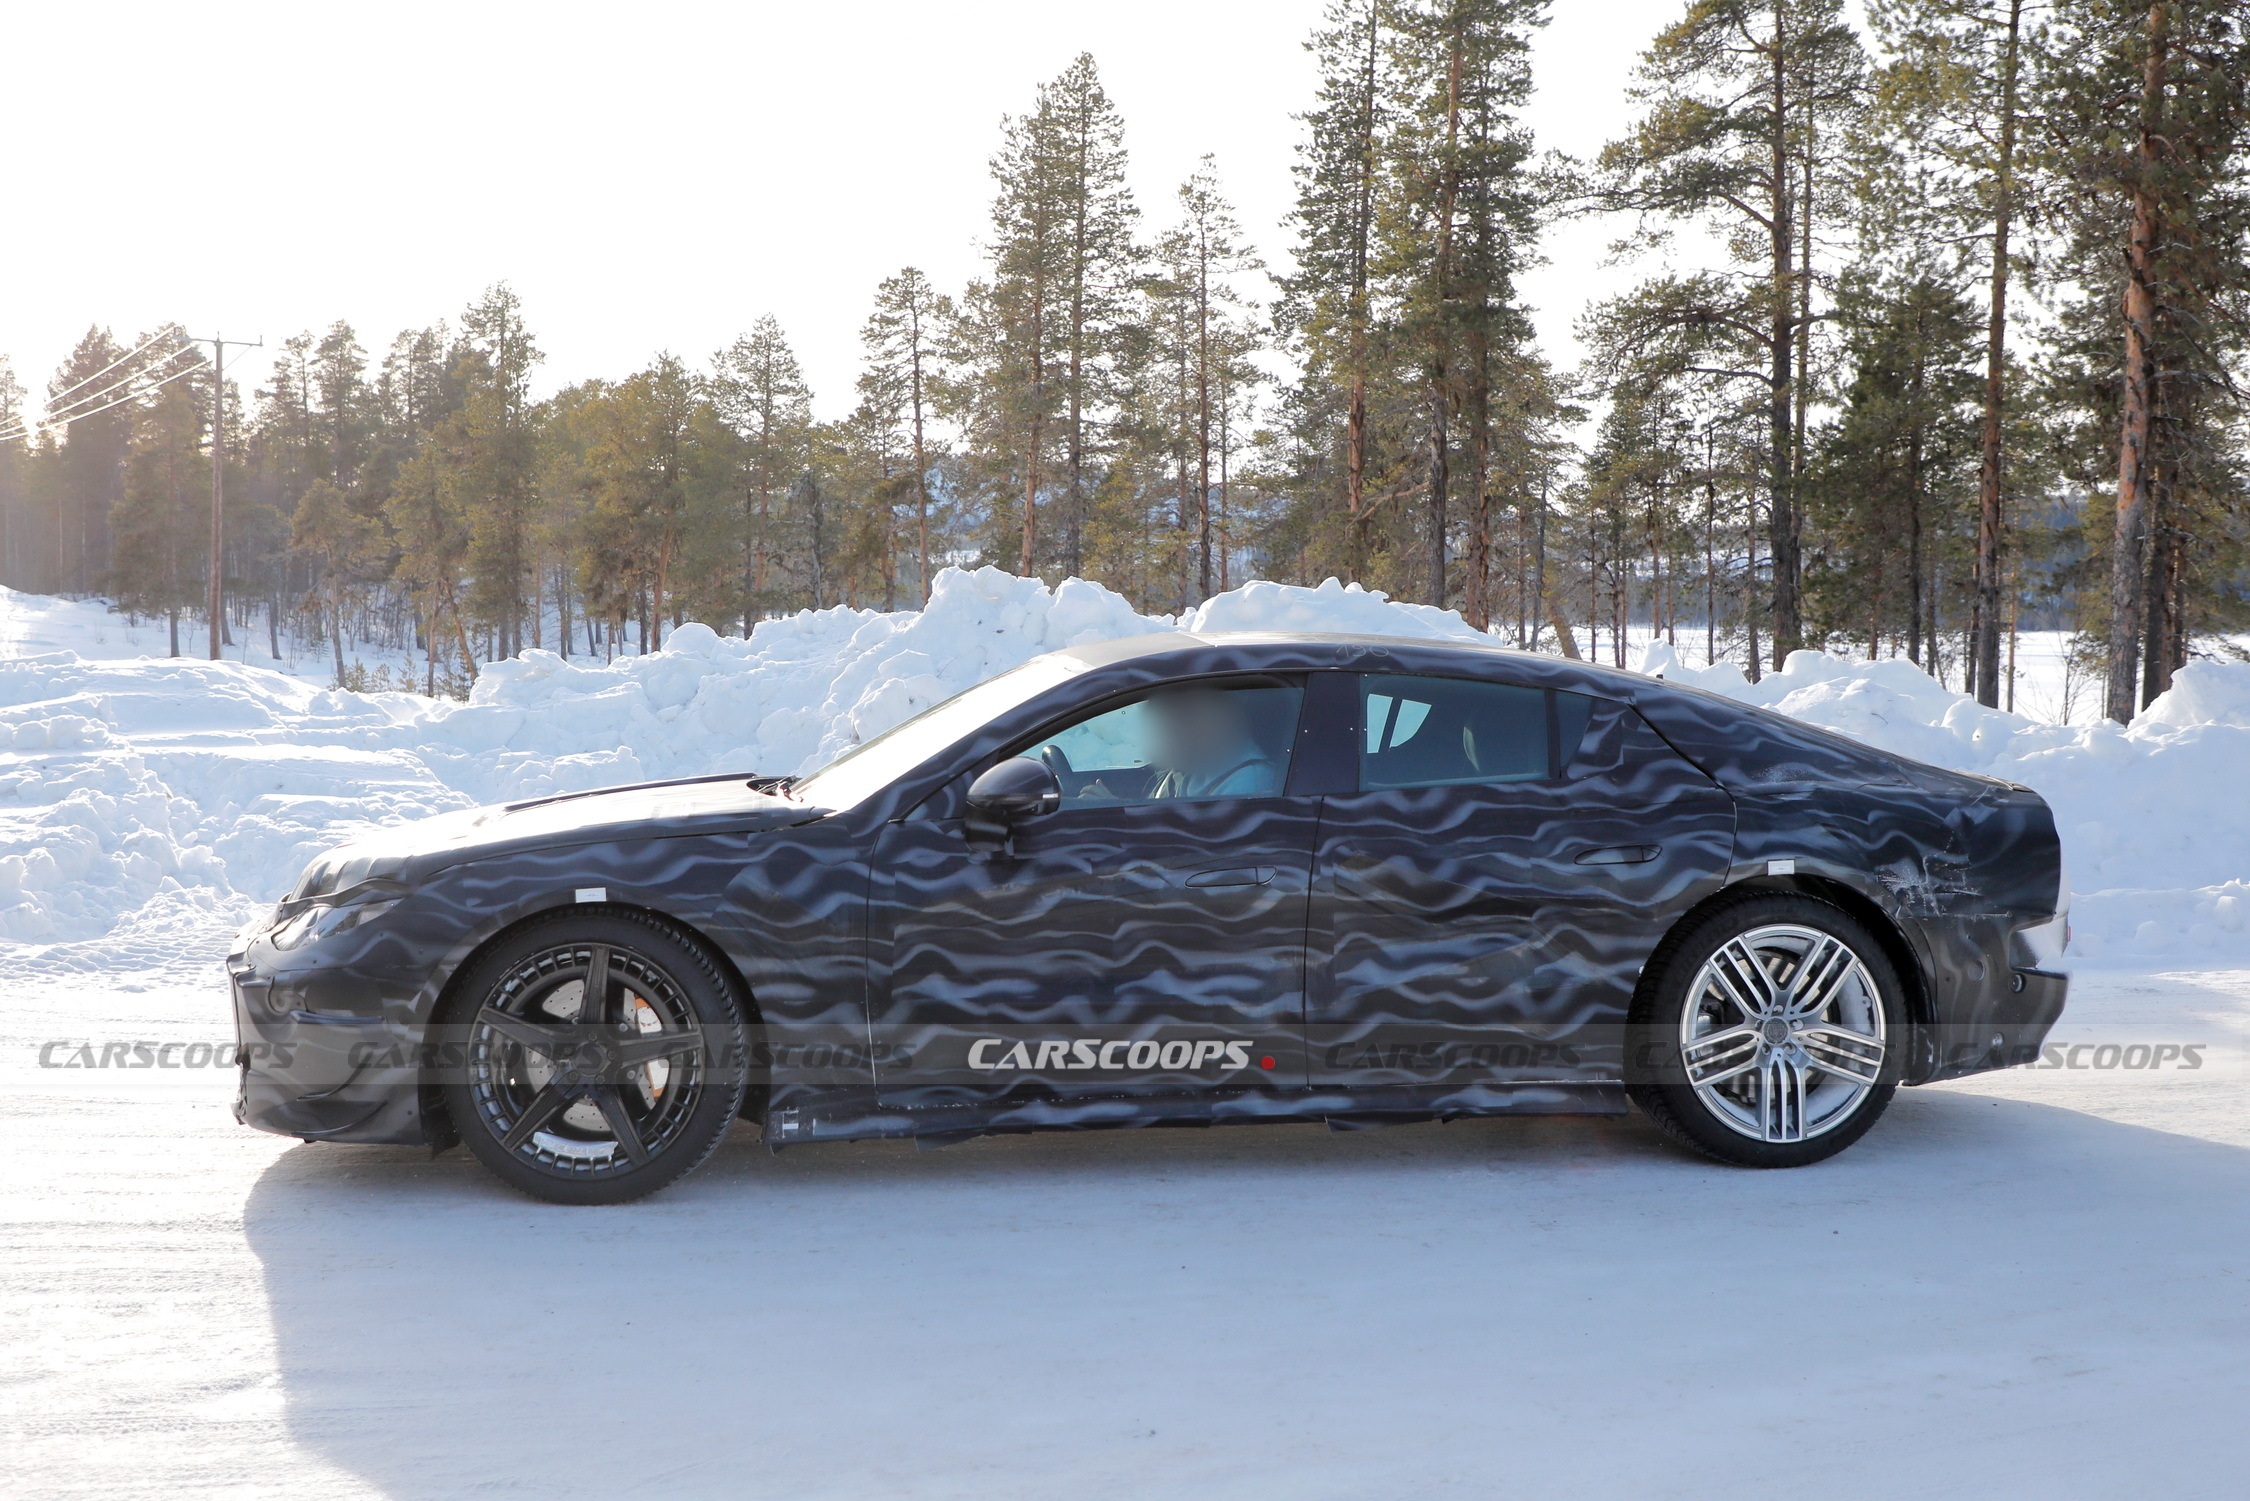 View - Mercedes-AMG xác nhận chuẩn bị ra xe điện mới, cạnh tranh Porsche Taycan | Báo Dân trí